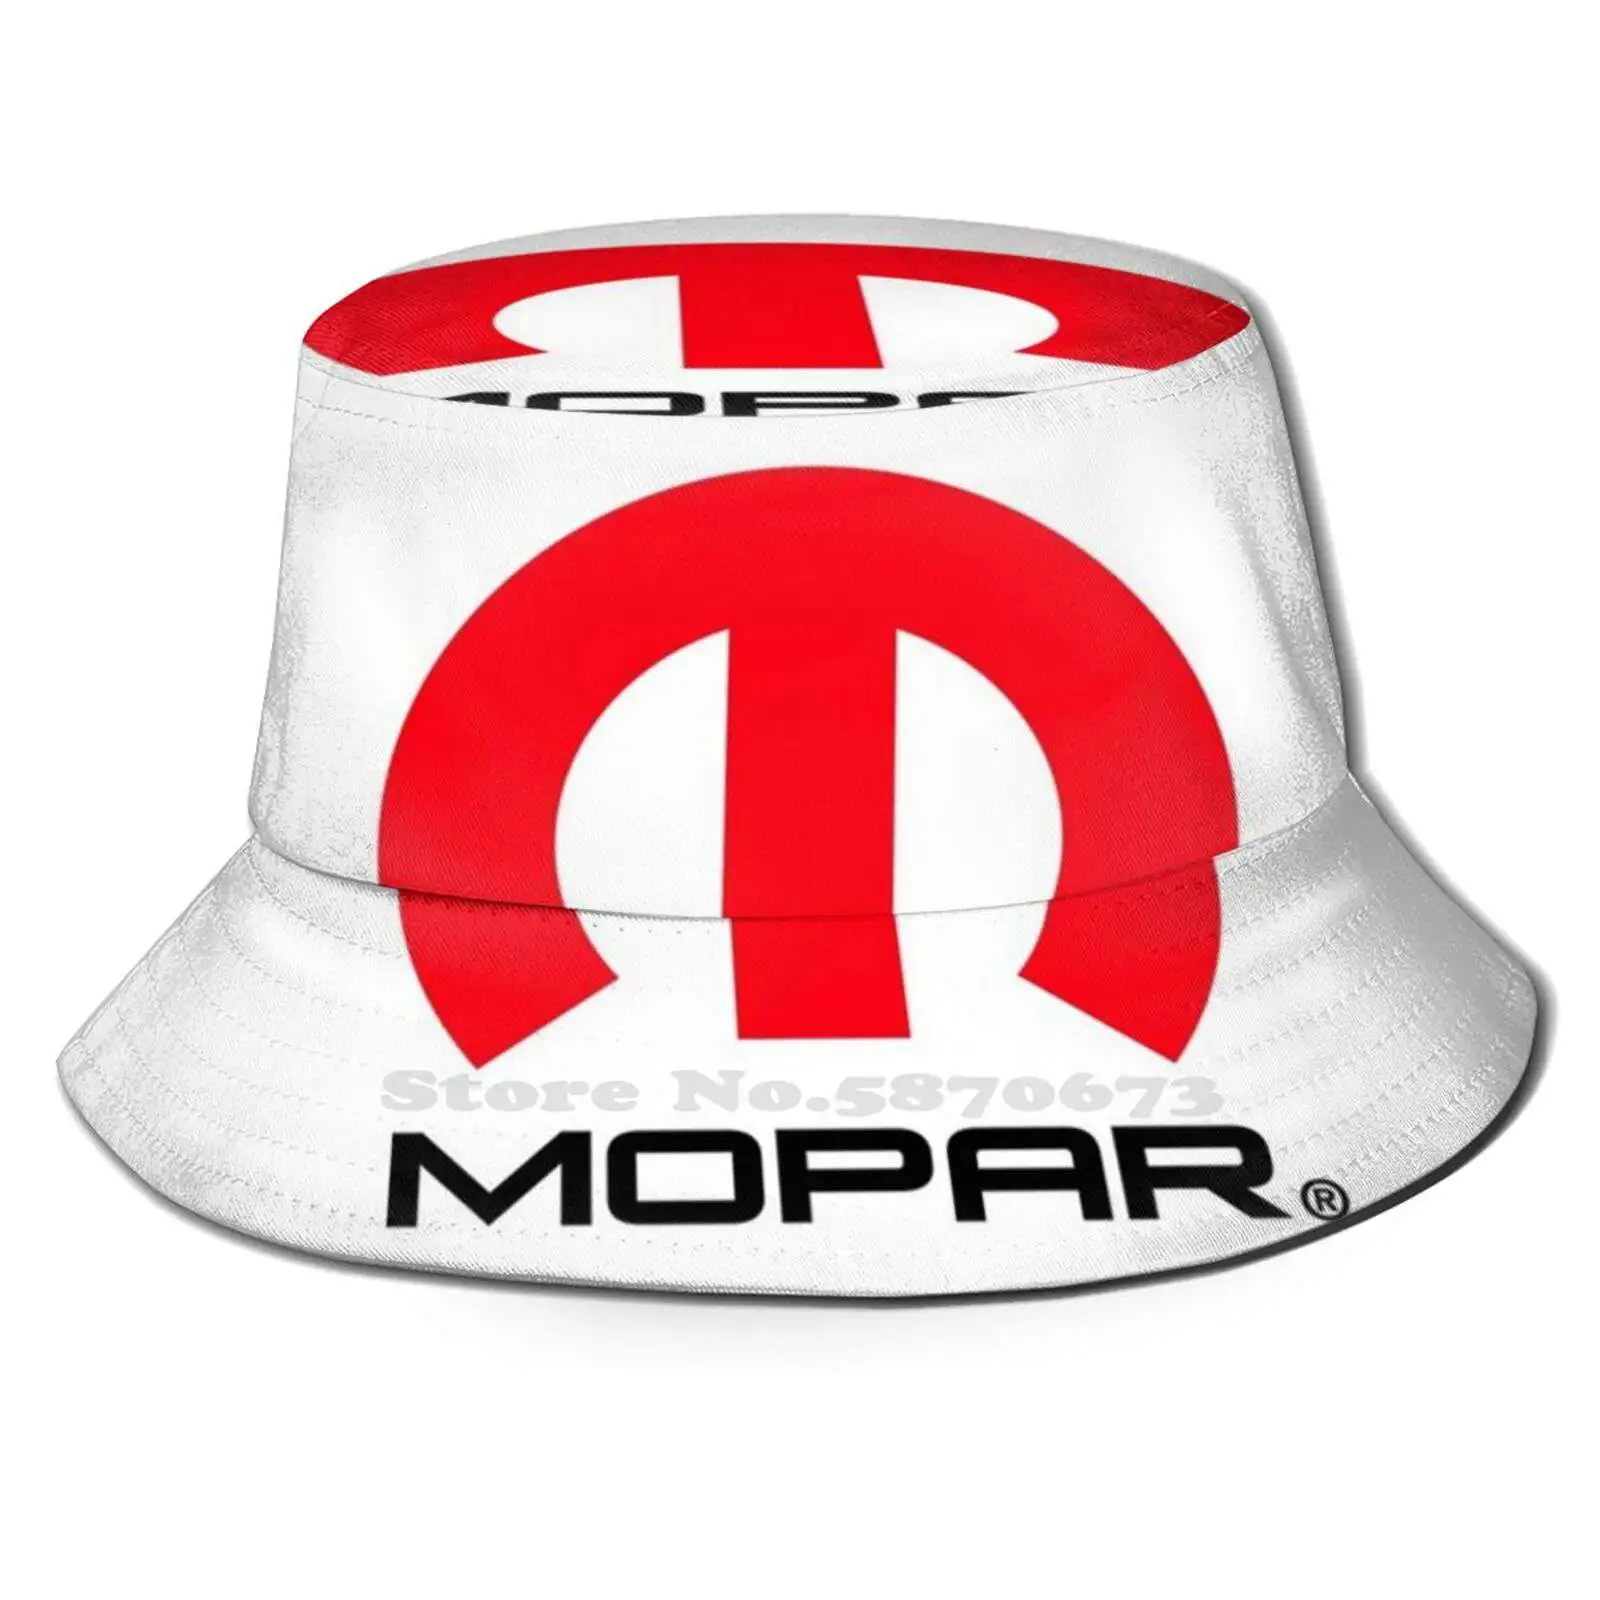 

Панама Mopar с красным и черным логотипом, шляпа от солнца, Аксессуары для автомобилей Fiat Chrysler